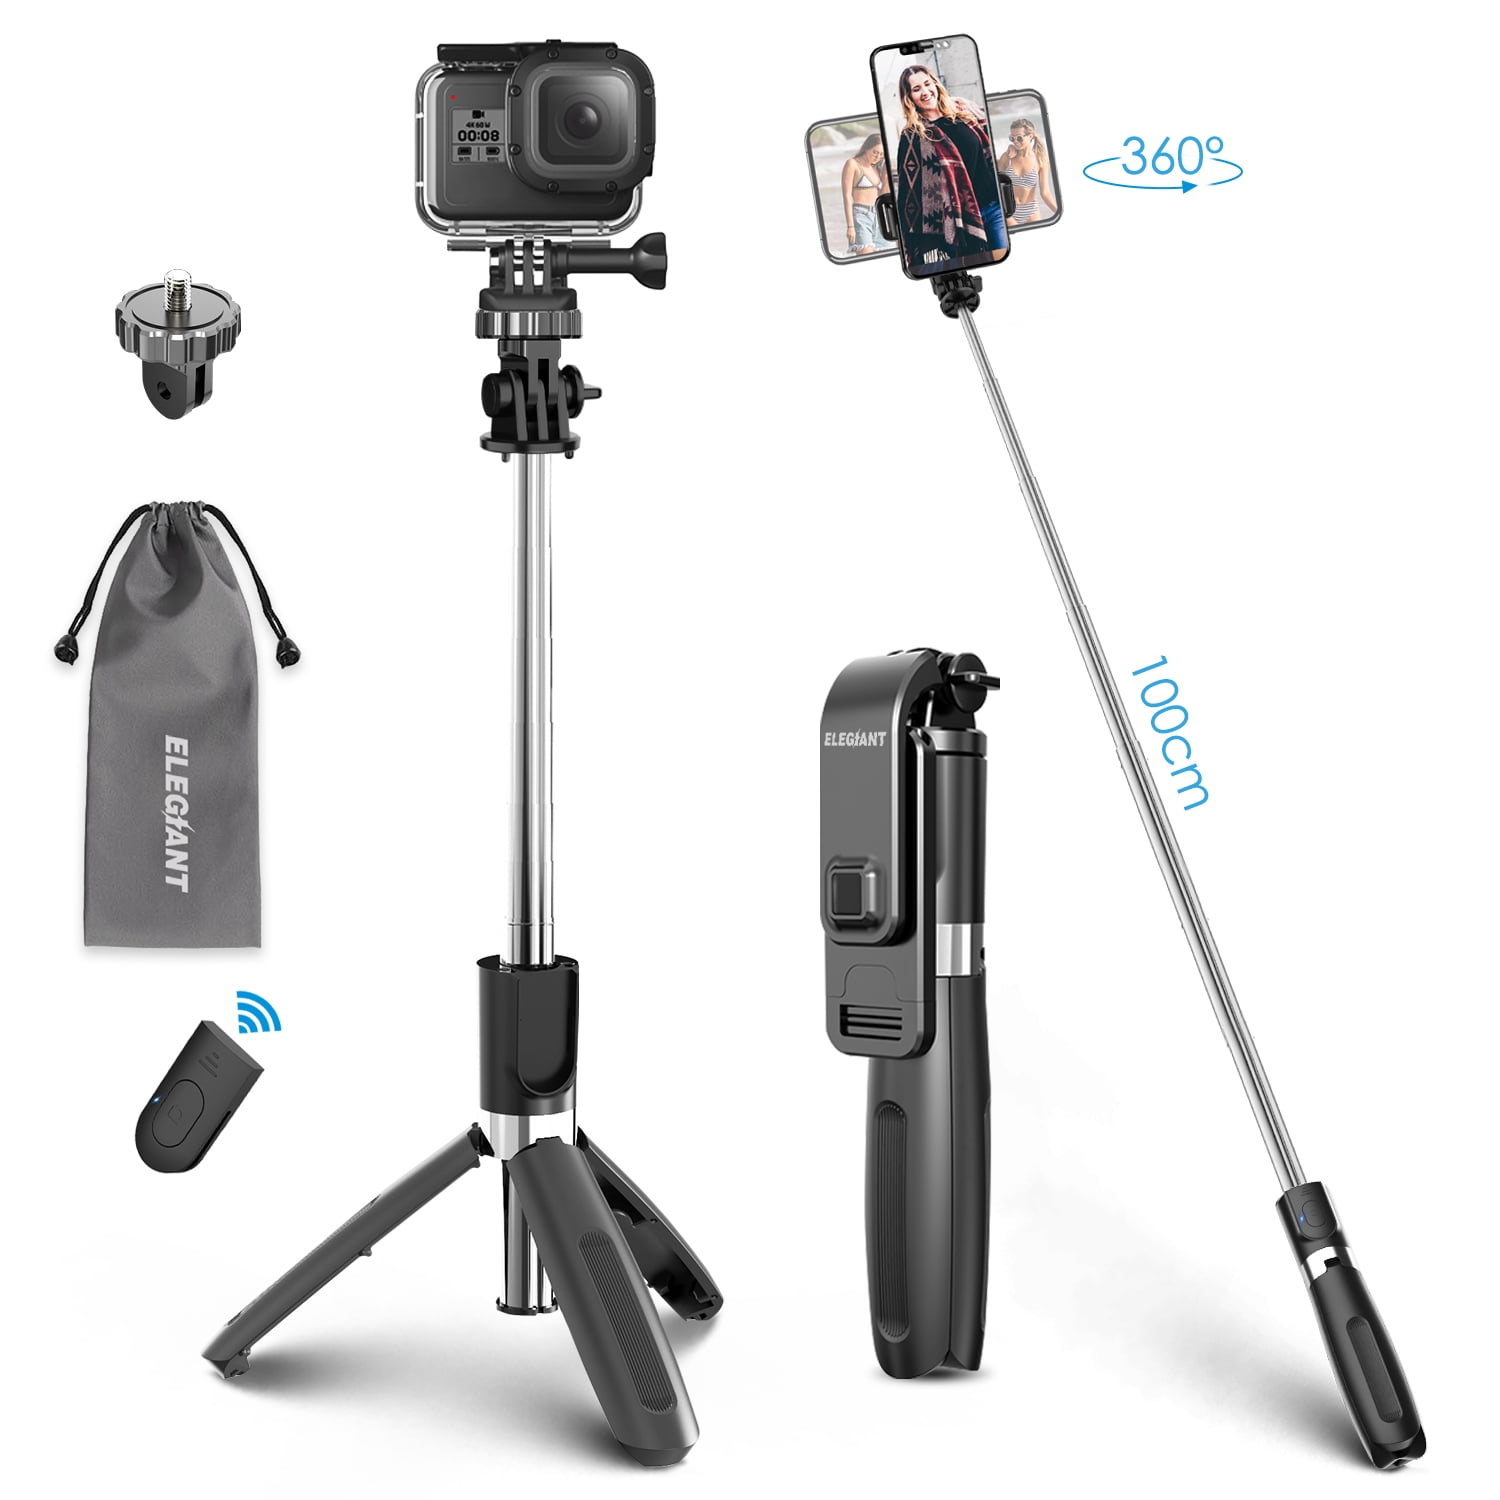 fuwinkr Camera Monopod Camera Selfie Stick for Mobile Phone SLR Camera Outdoor Camera Accessory P264A Anti-Slip Portable Mini Monopod